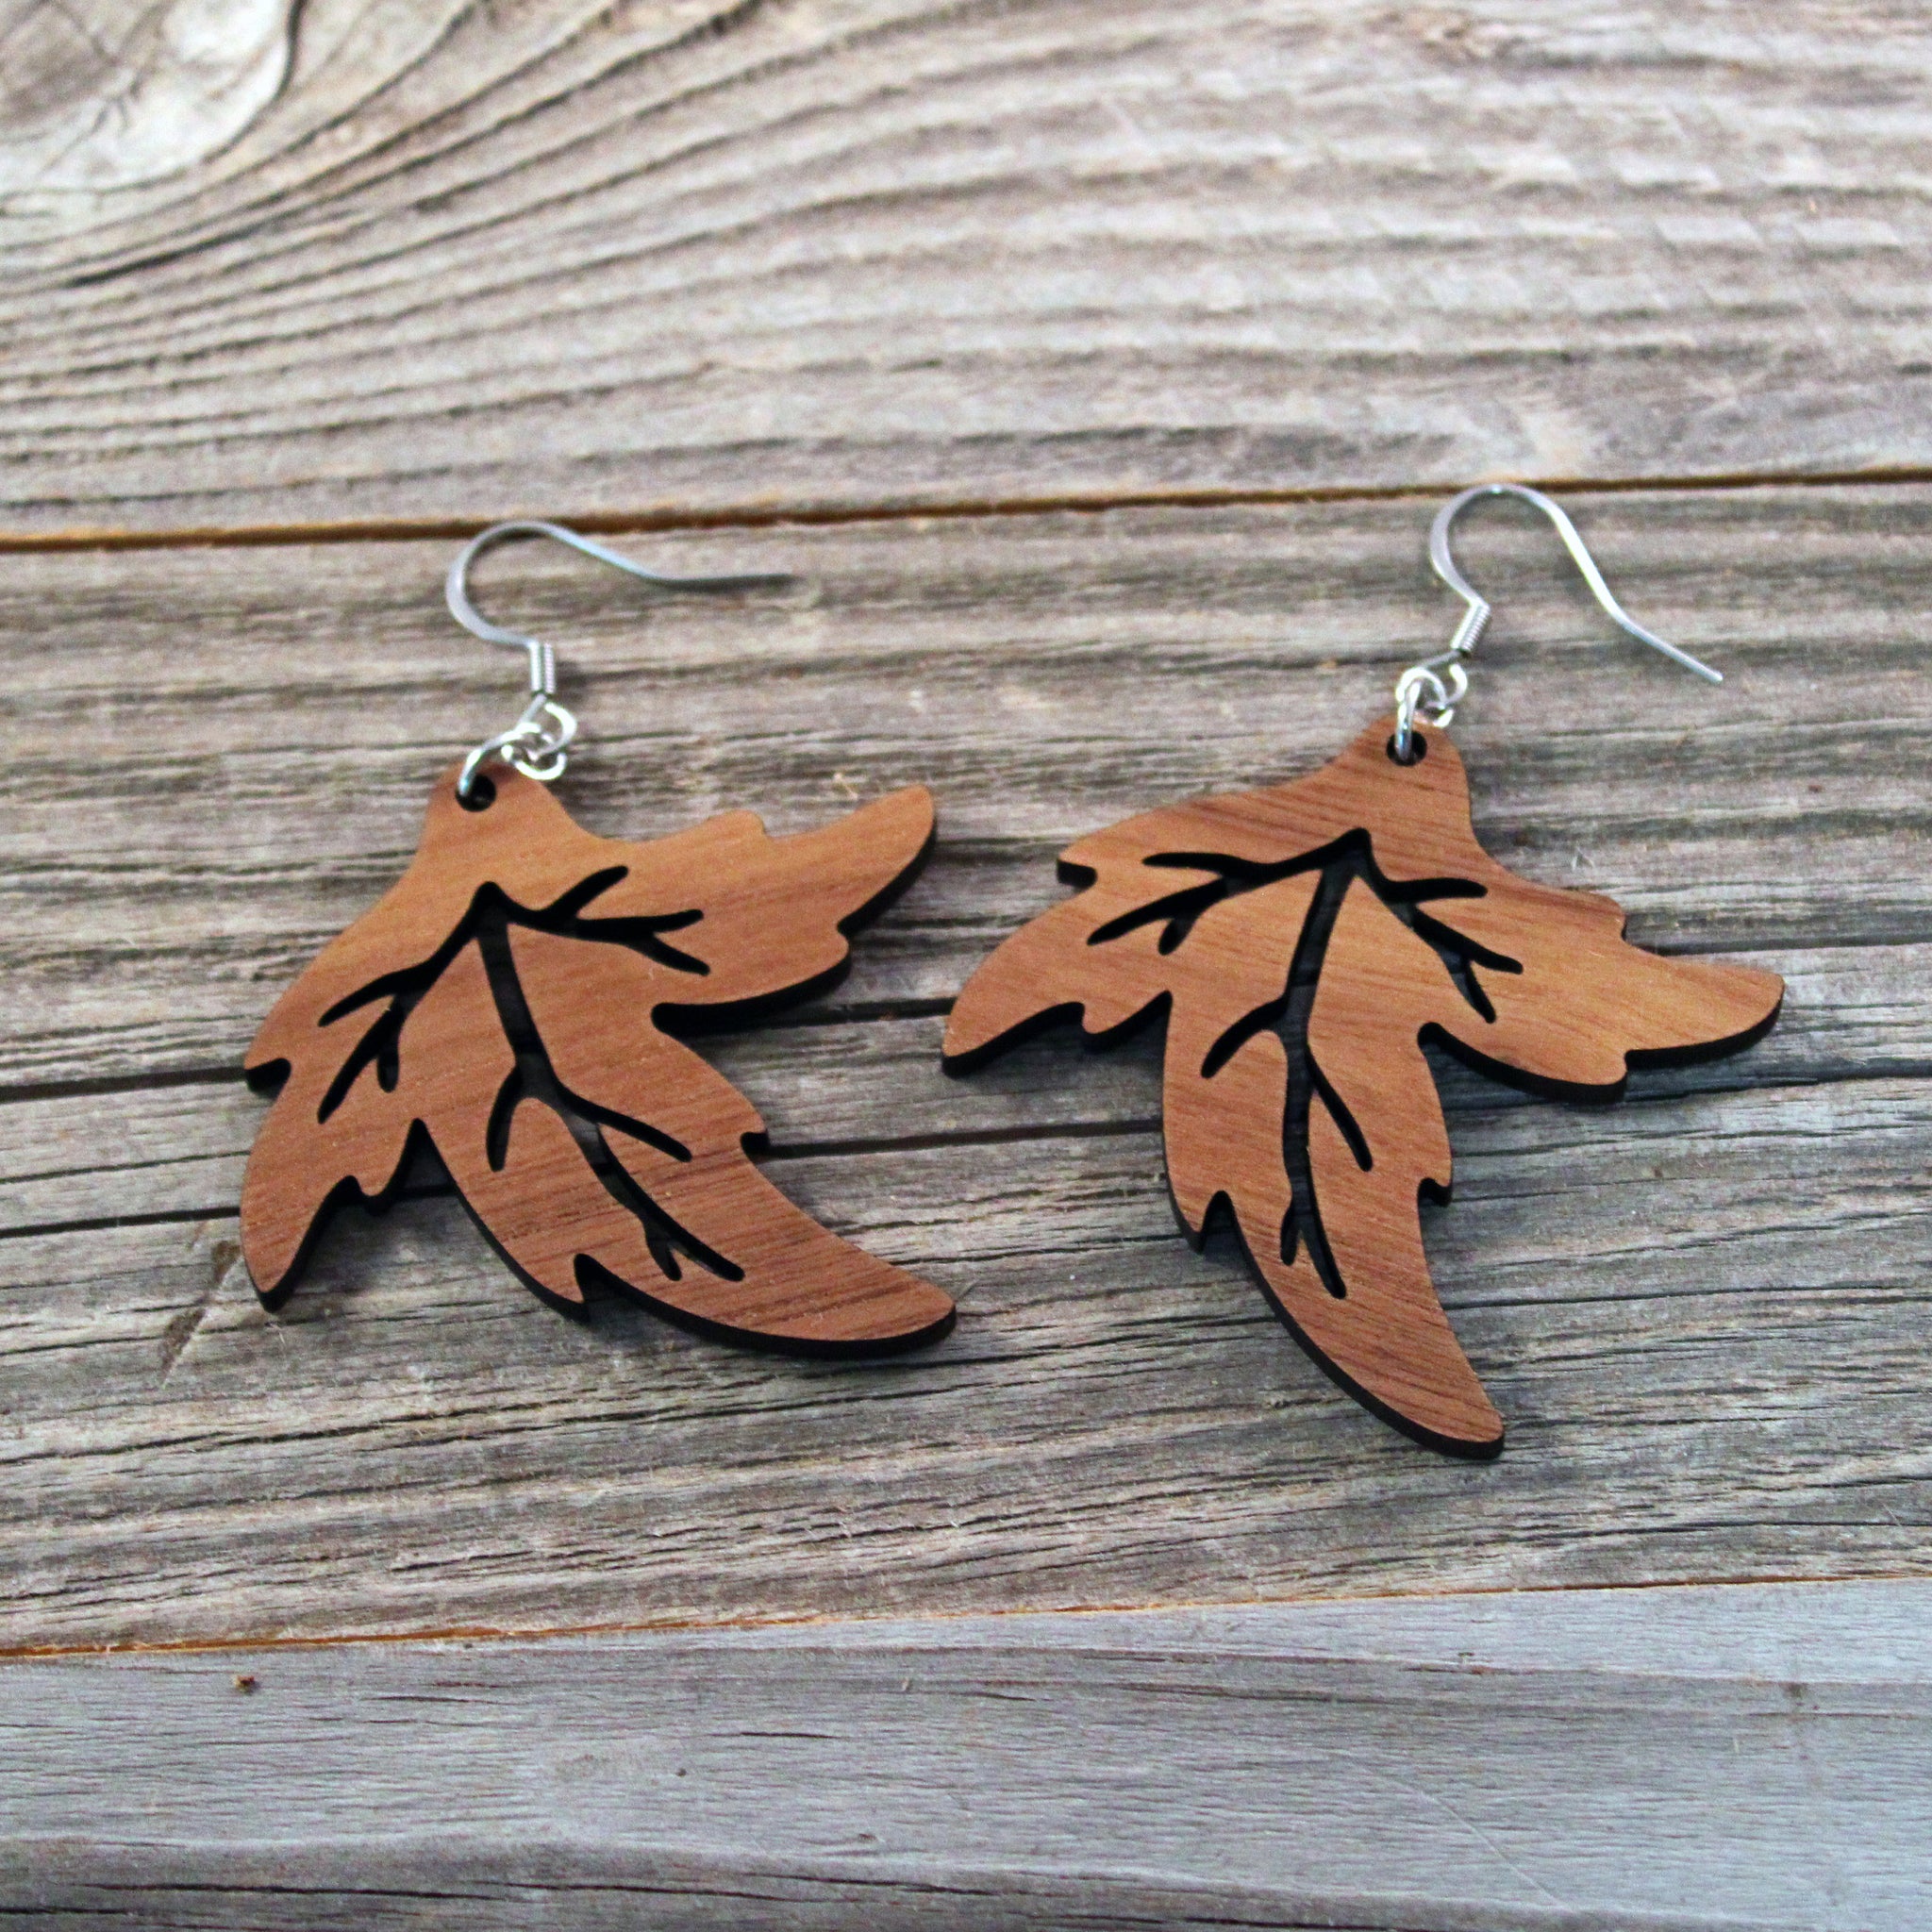 Wooden Dangle Earrings/Big Wooden Earrings/Boho Earrings/Leaf Earrings/Earrings from Wood/Hypoallergenic/Lightweight